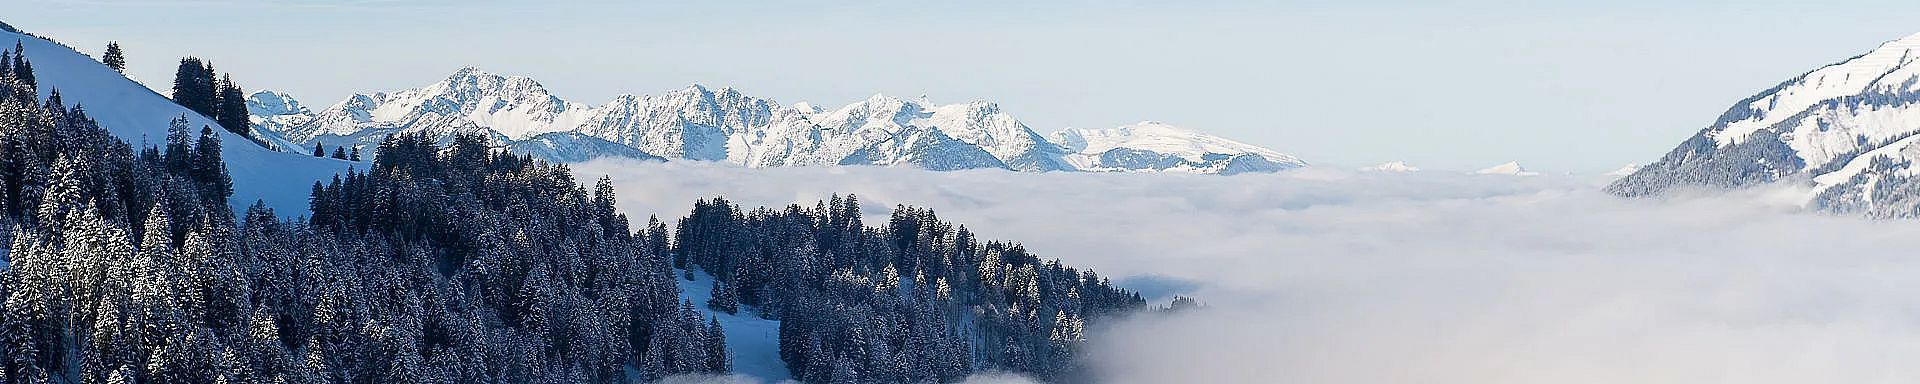 walsertal-winter-sonntag-stein-landschaft